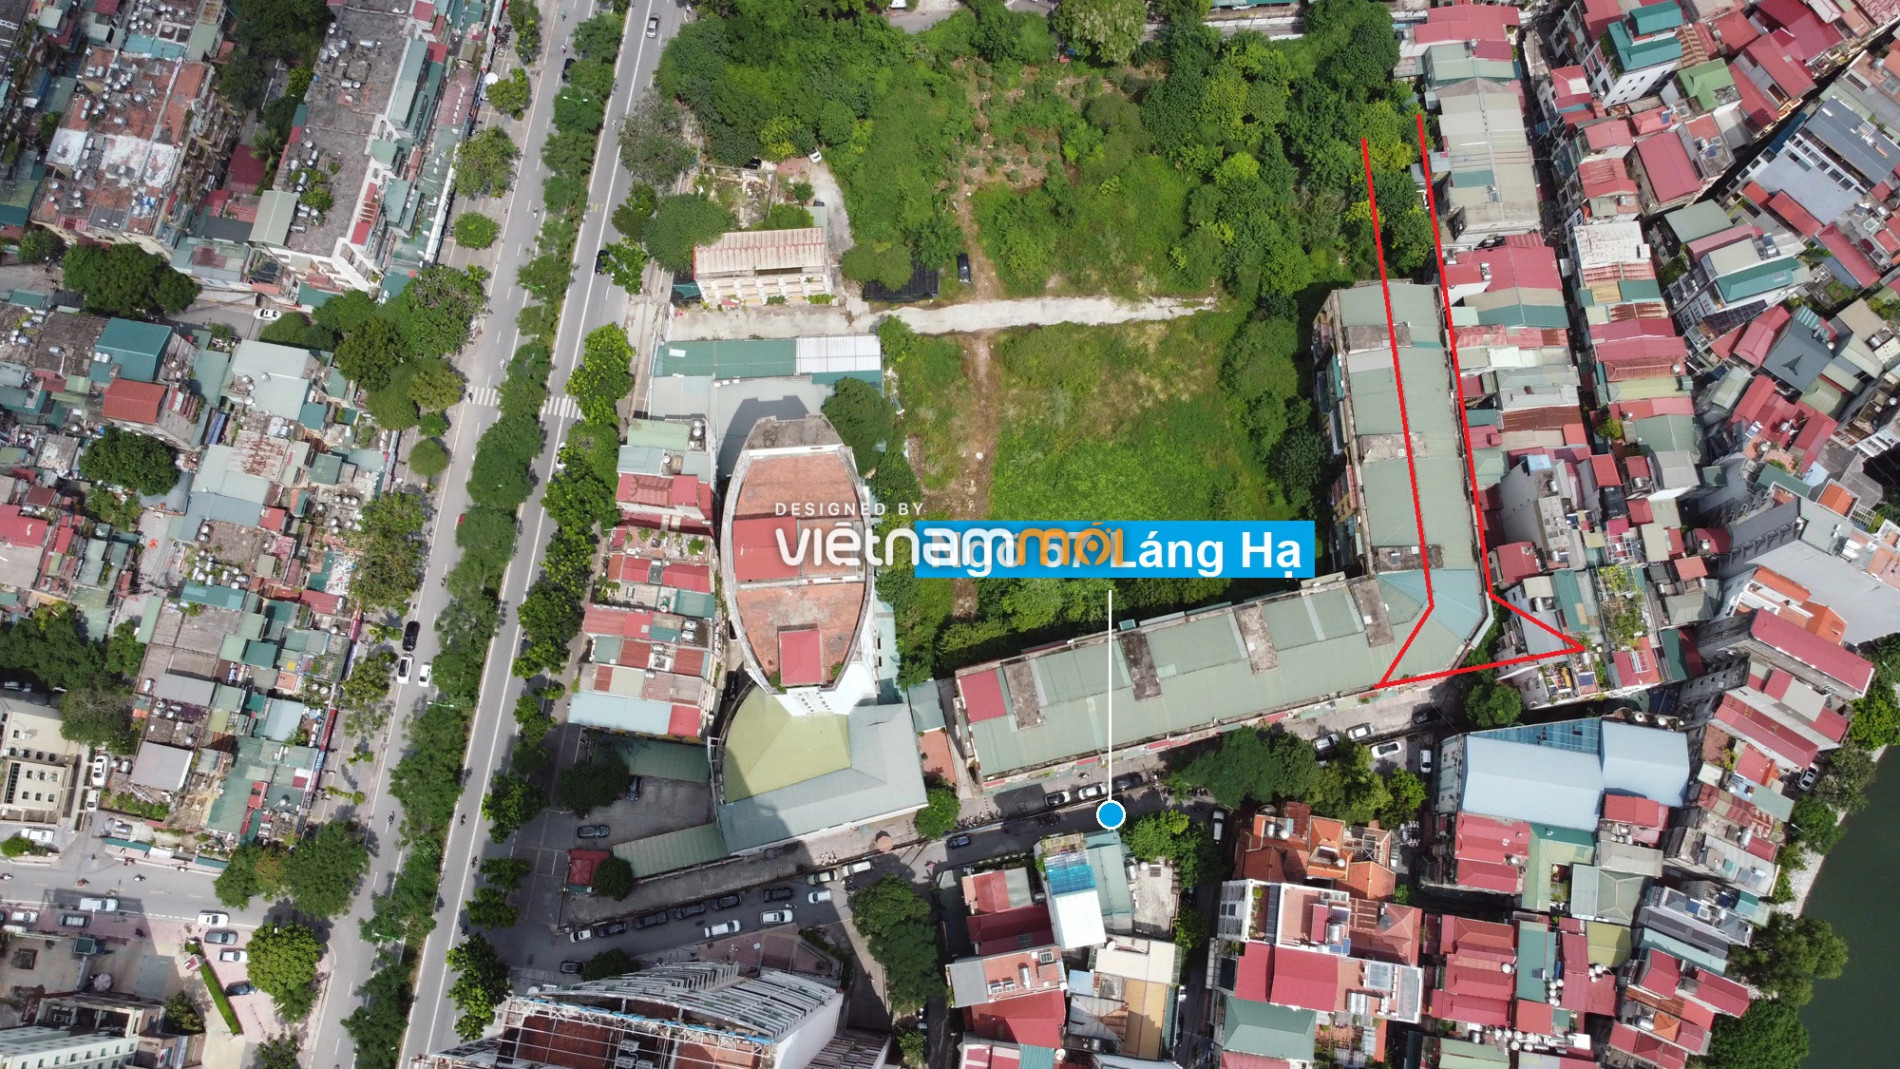 Những khu đất sắp thu hồi để mở đường ở quận Đống Đa, Hà Nội (phần 3) - Ảnh 16.